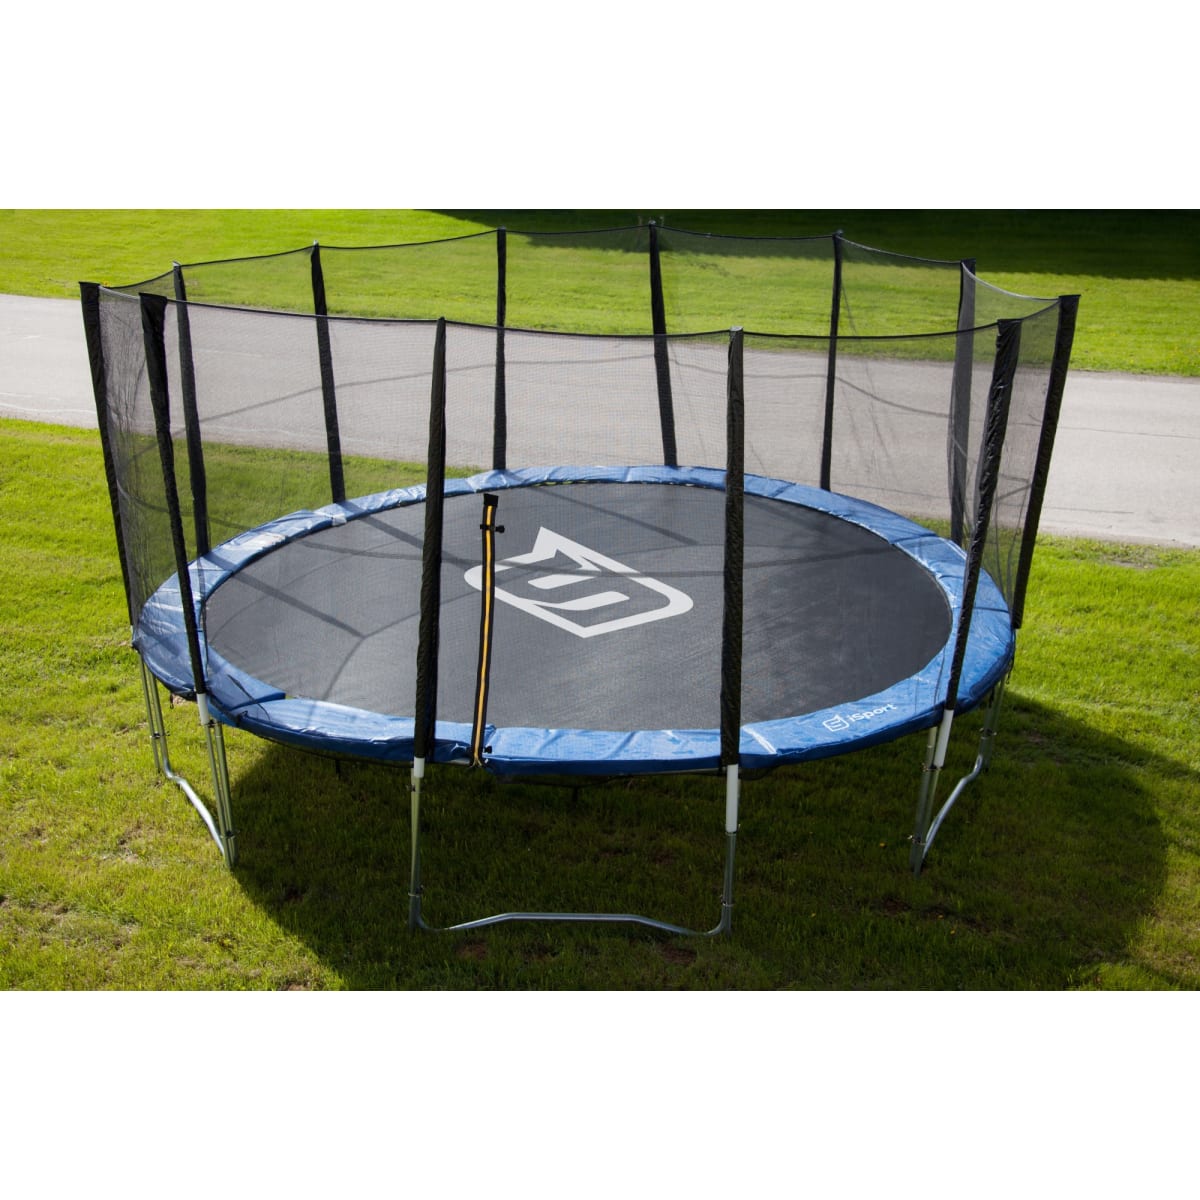 iSport 4,6 m trampoliinin turvaverkko (ilman tolppia) | Karkkainen.com  verkkokauppa